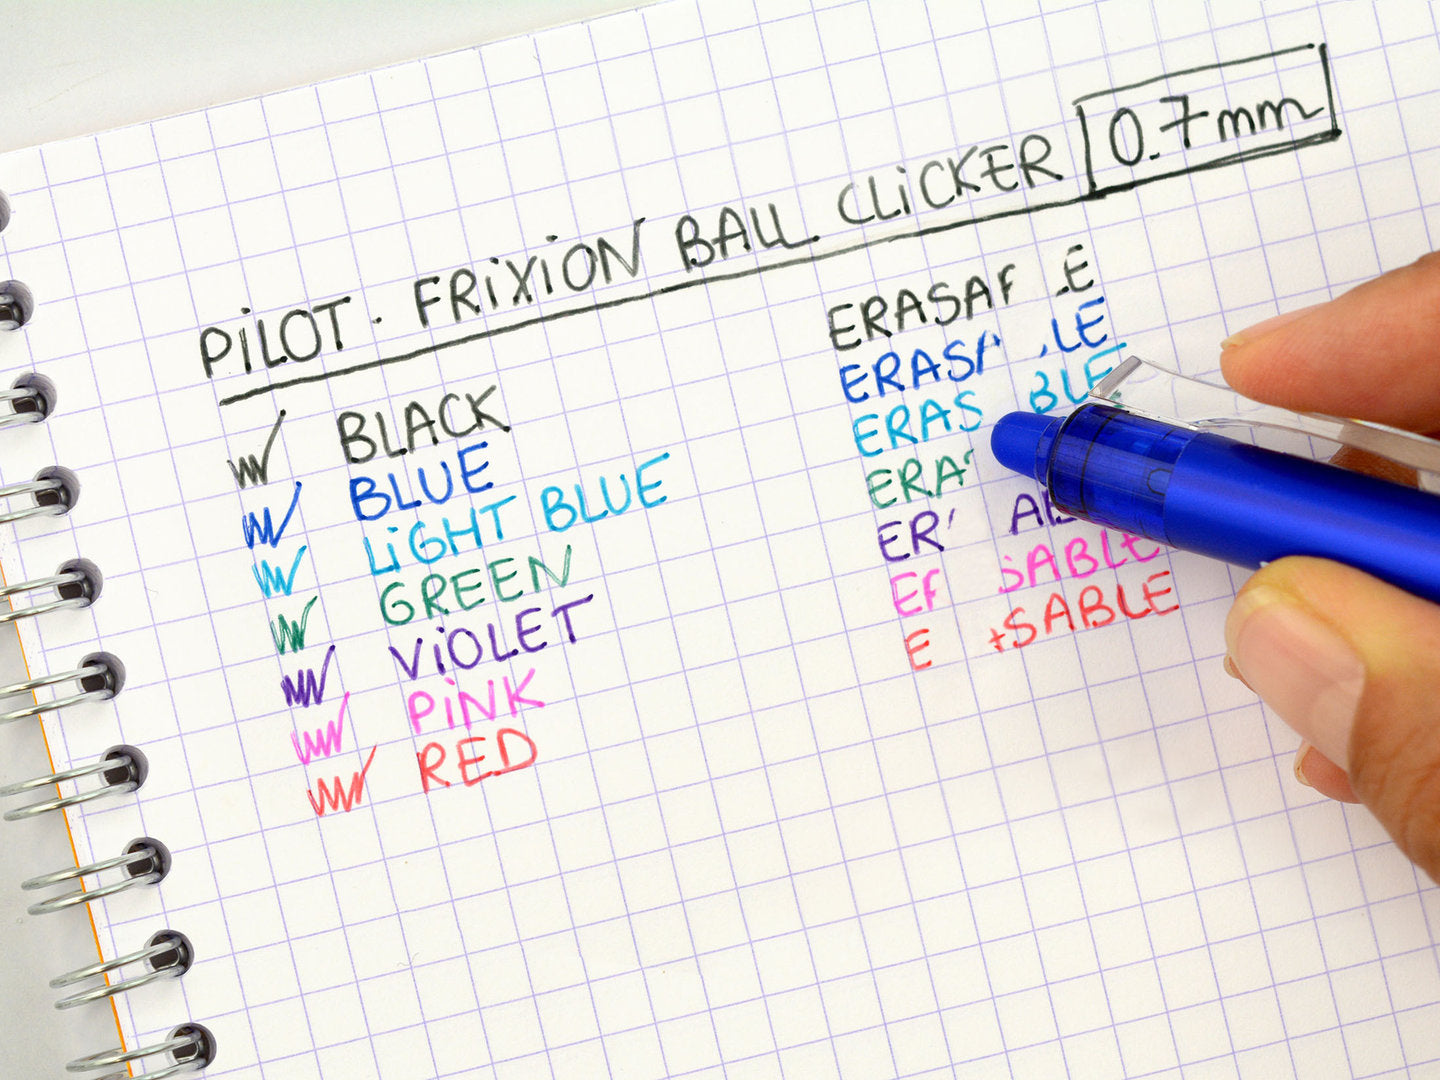 Pilot Frixion Ball Clicker 0,7 - punainen